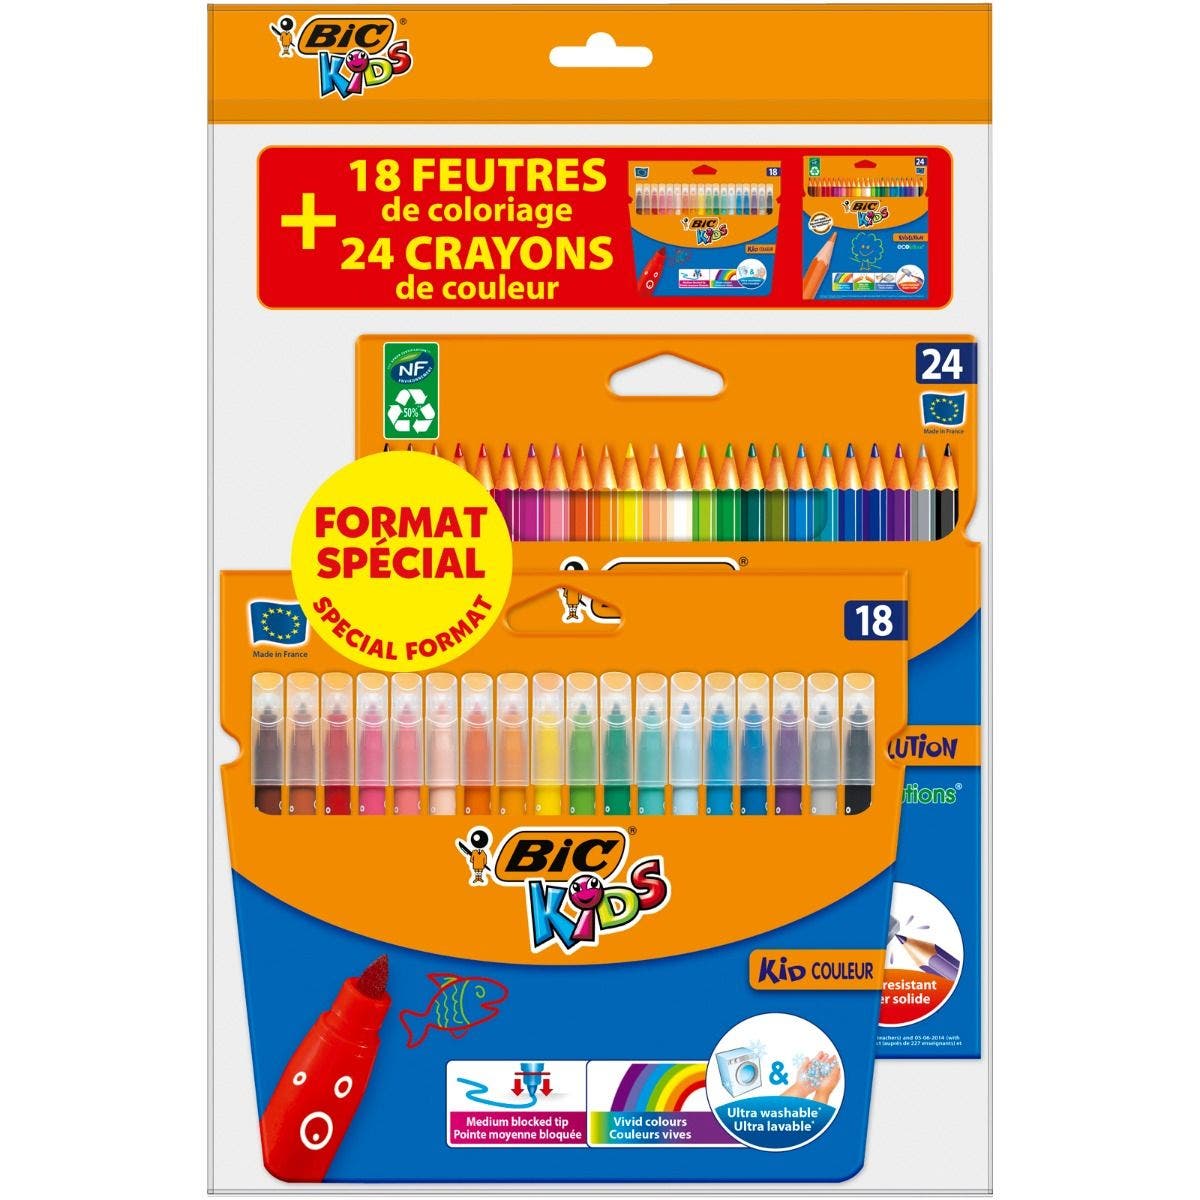 Crayons de couleur : Boite de 24 BIC Kids - Talos